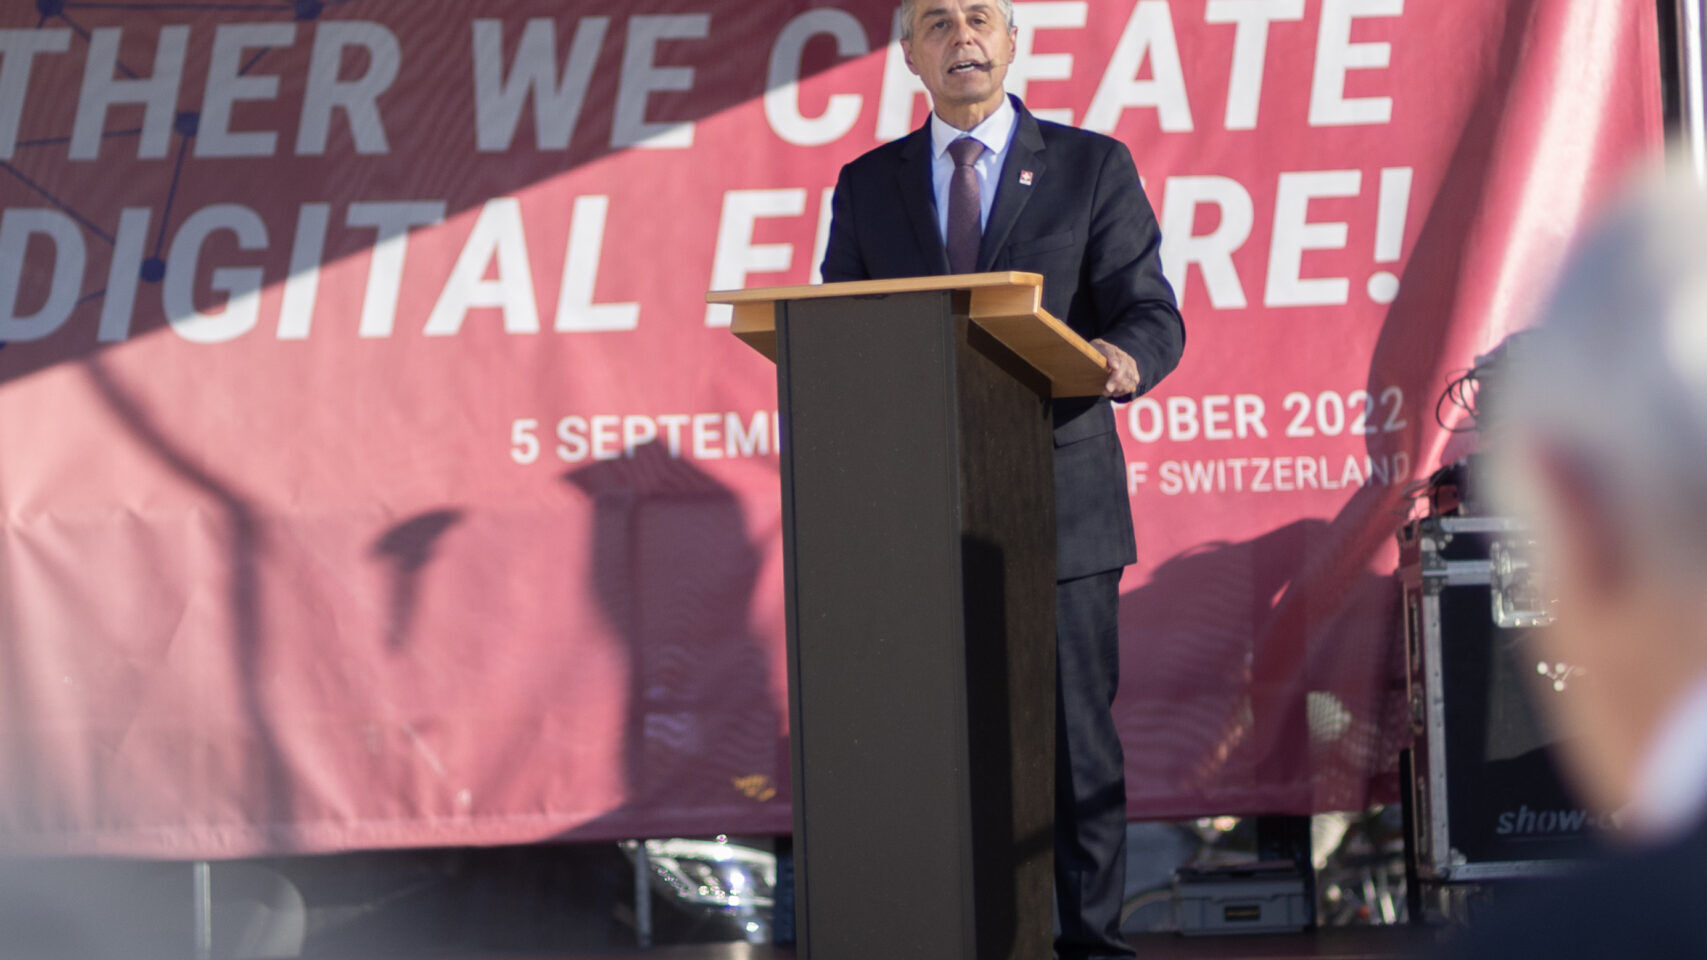 Le 'Giornali Digitali Svizzere' 2022 sono state inaugurate a Berna il 5 settembre all’evento ha partecipato e tenuto un discorso il Presidente della Confederazione Elvetica, Ignazio Cassis